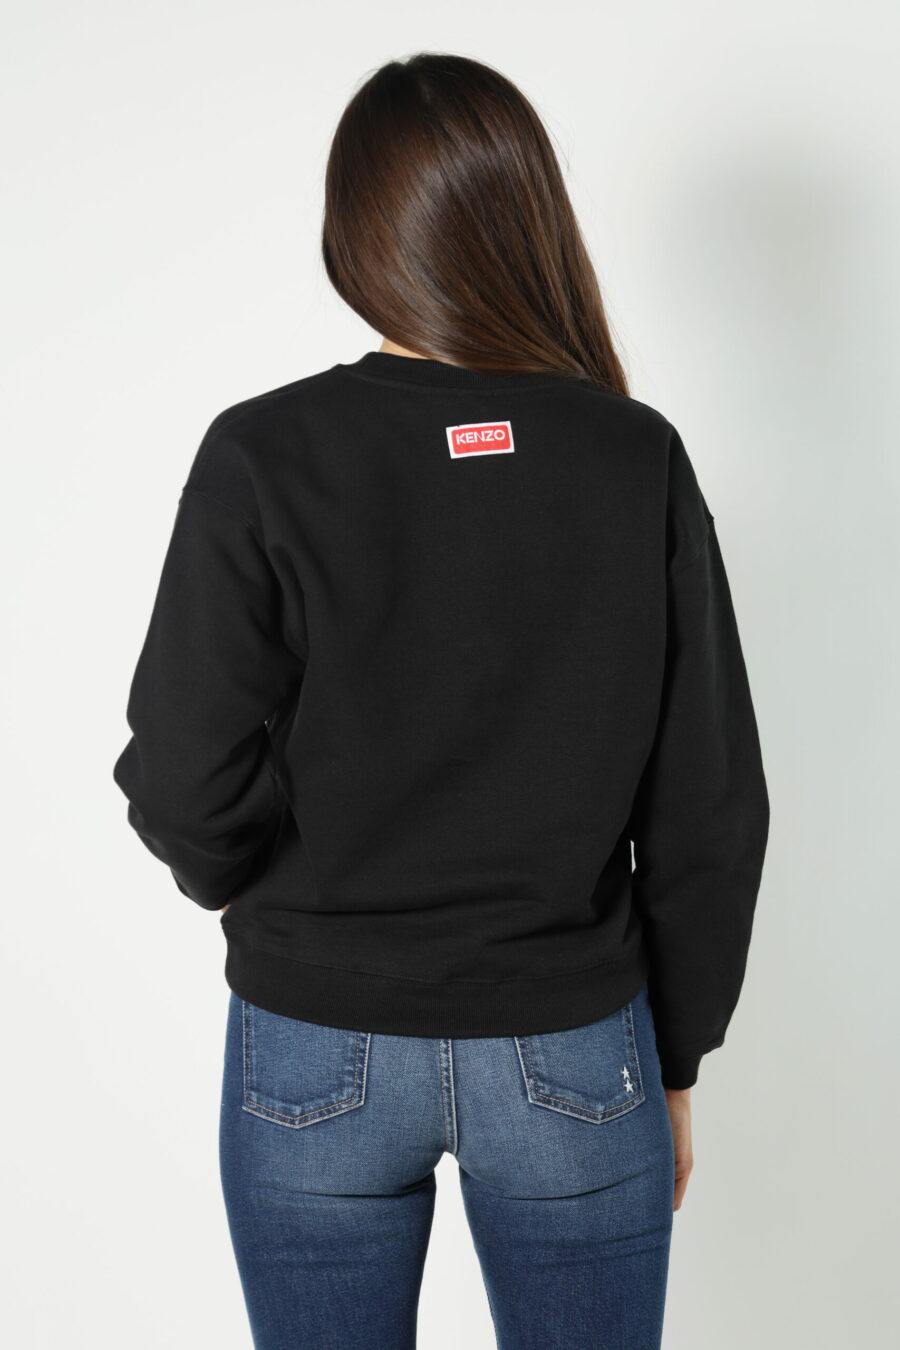 Schwarzes Sweatshirt mit "boke flower" Logo - 8052865435499 348 skaliert